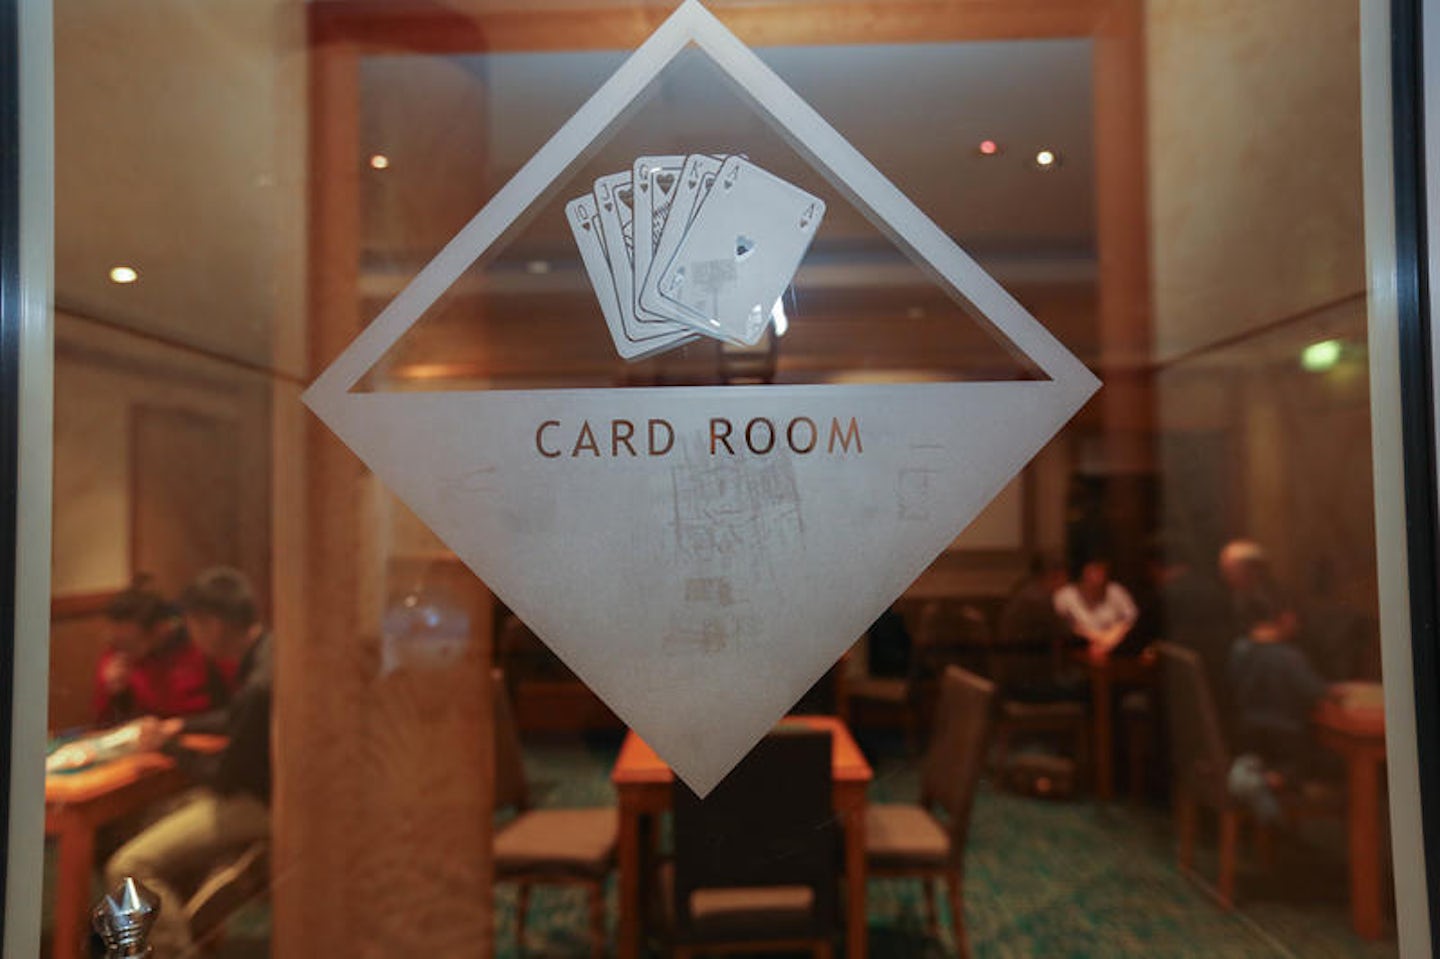 Card Room on Norwegian Gem